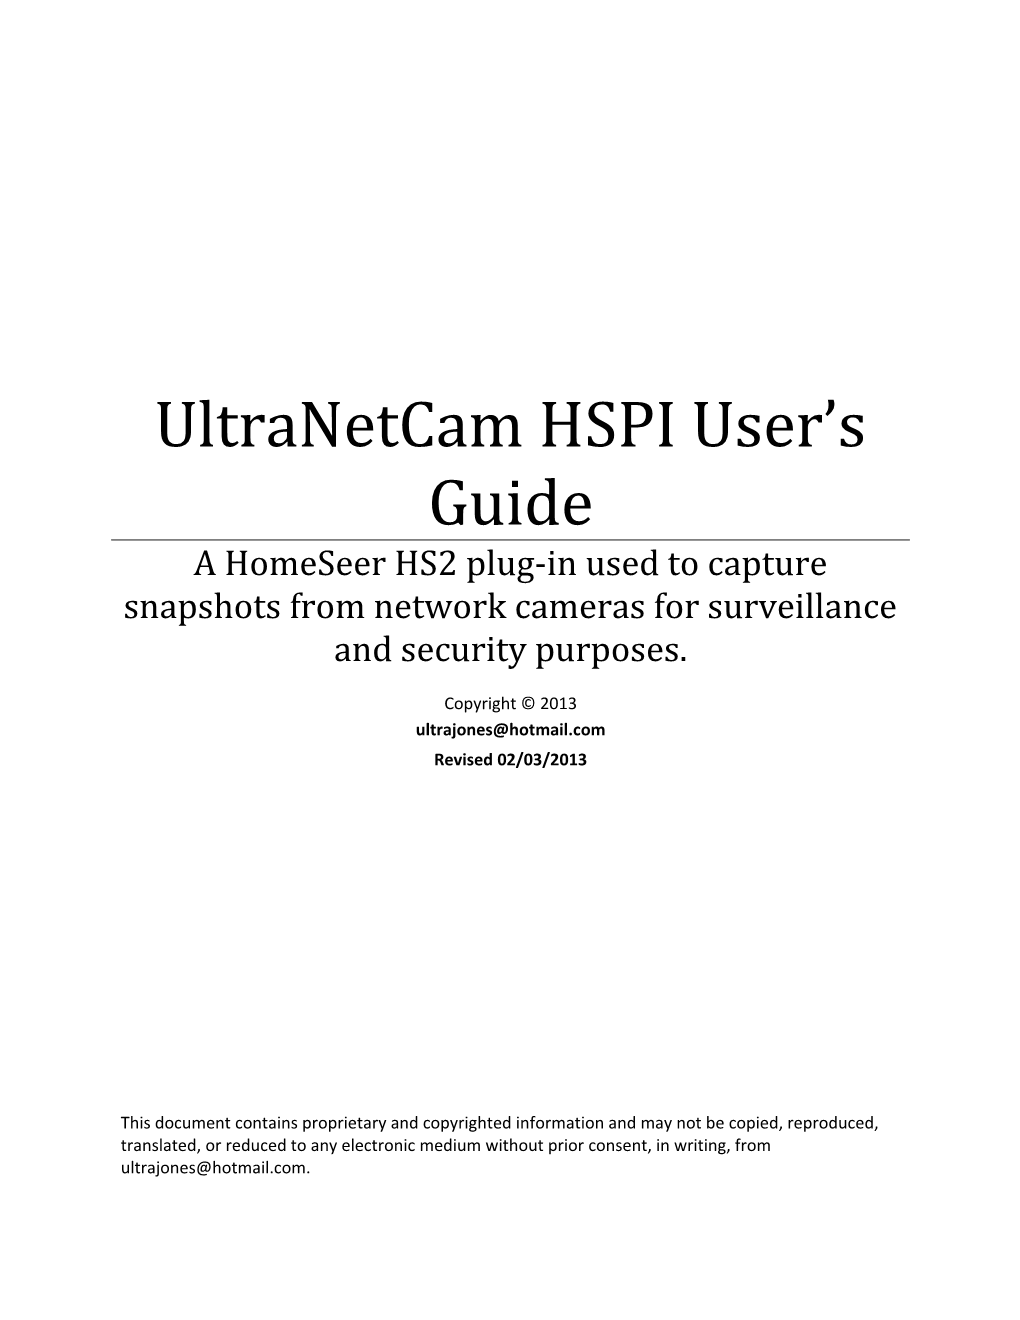 Ultramon HSPI User S Guide s2